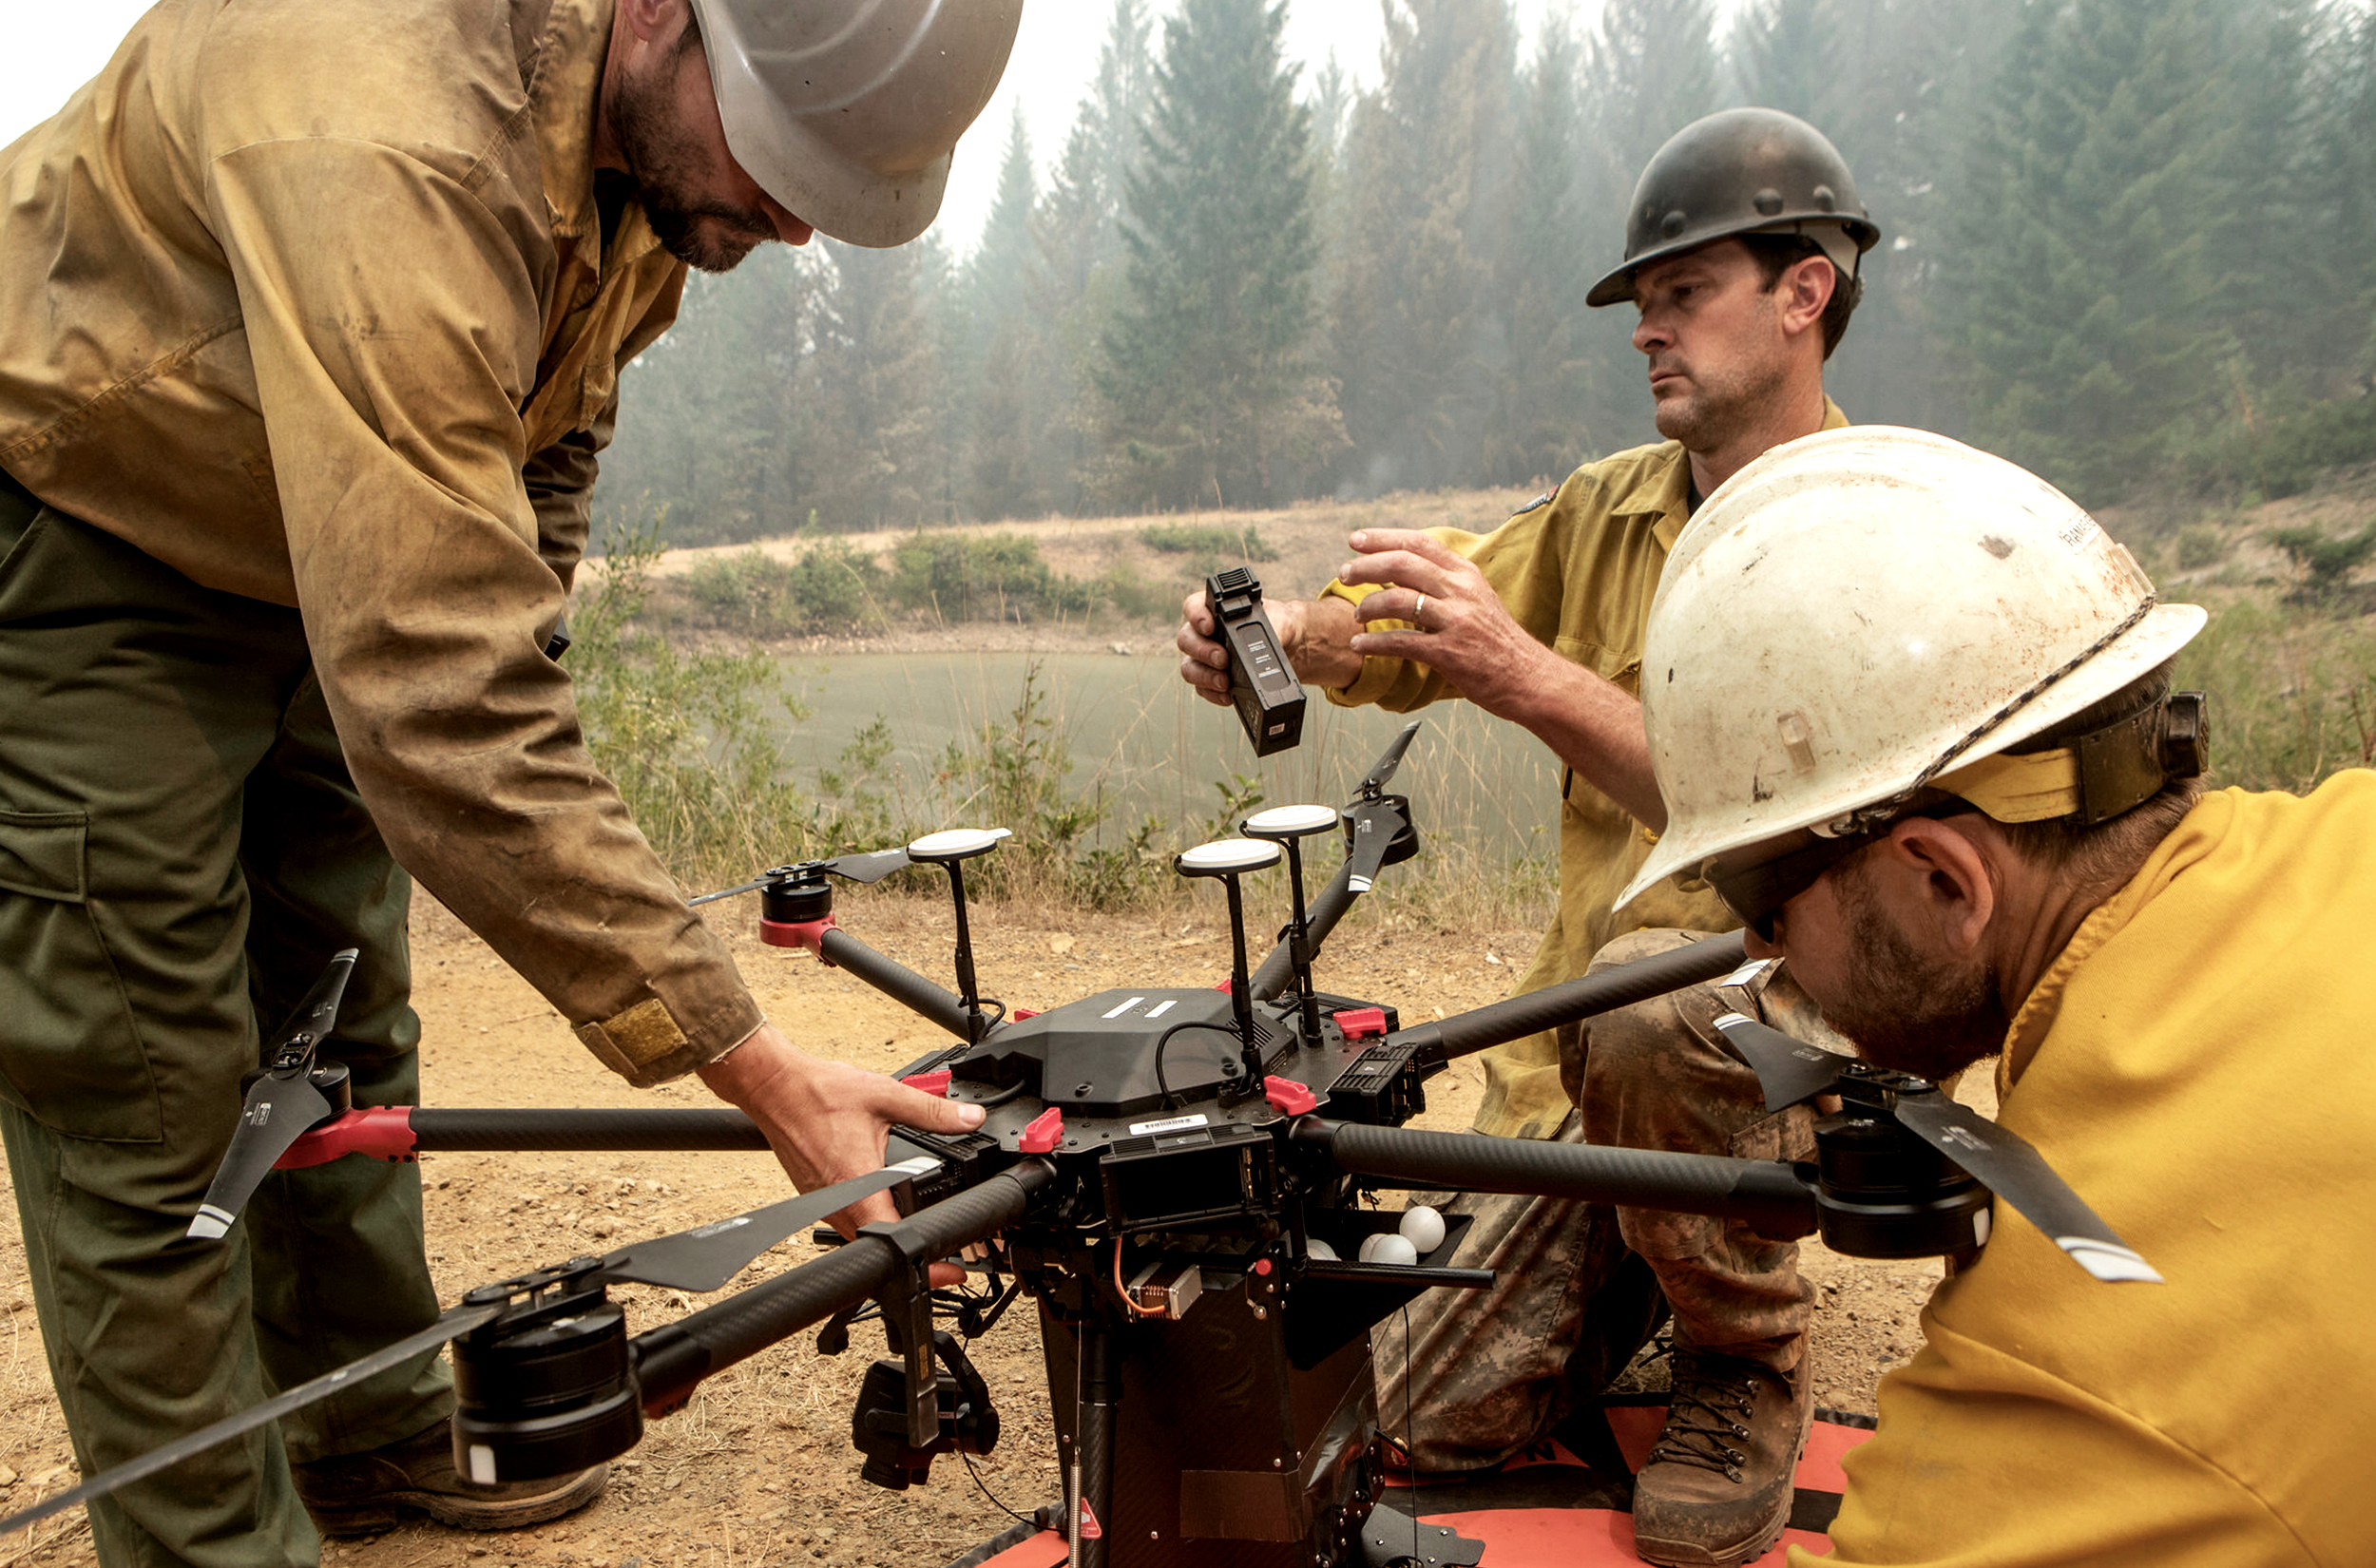 drones-wildland-firefighters